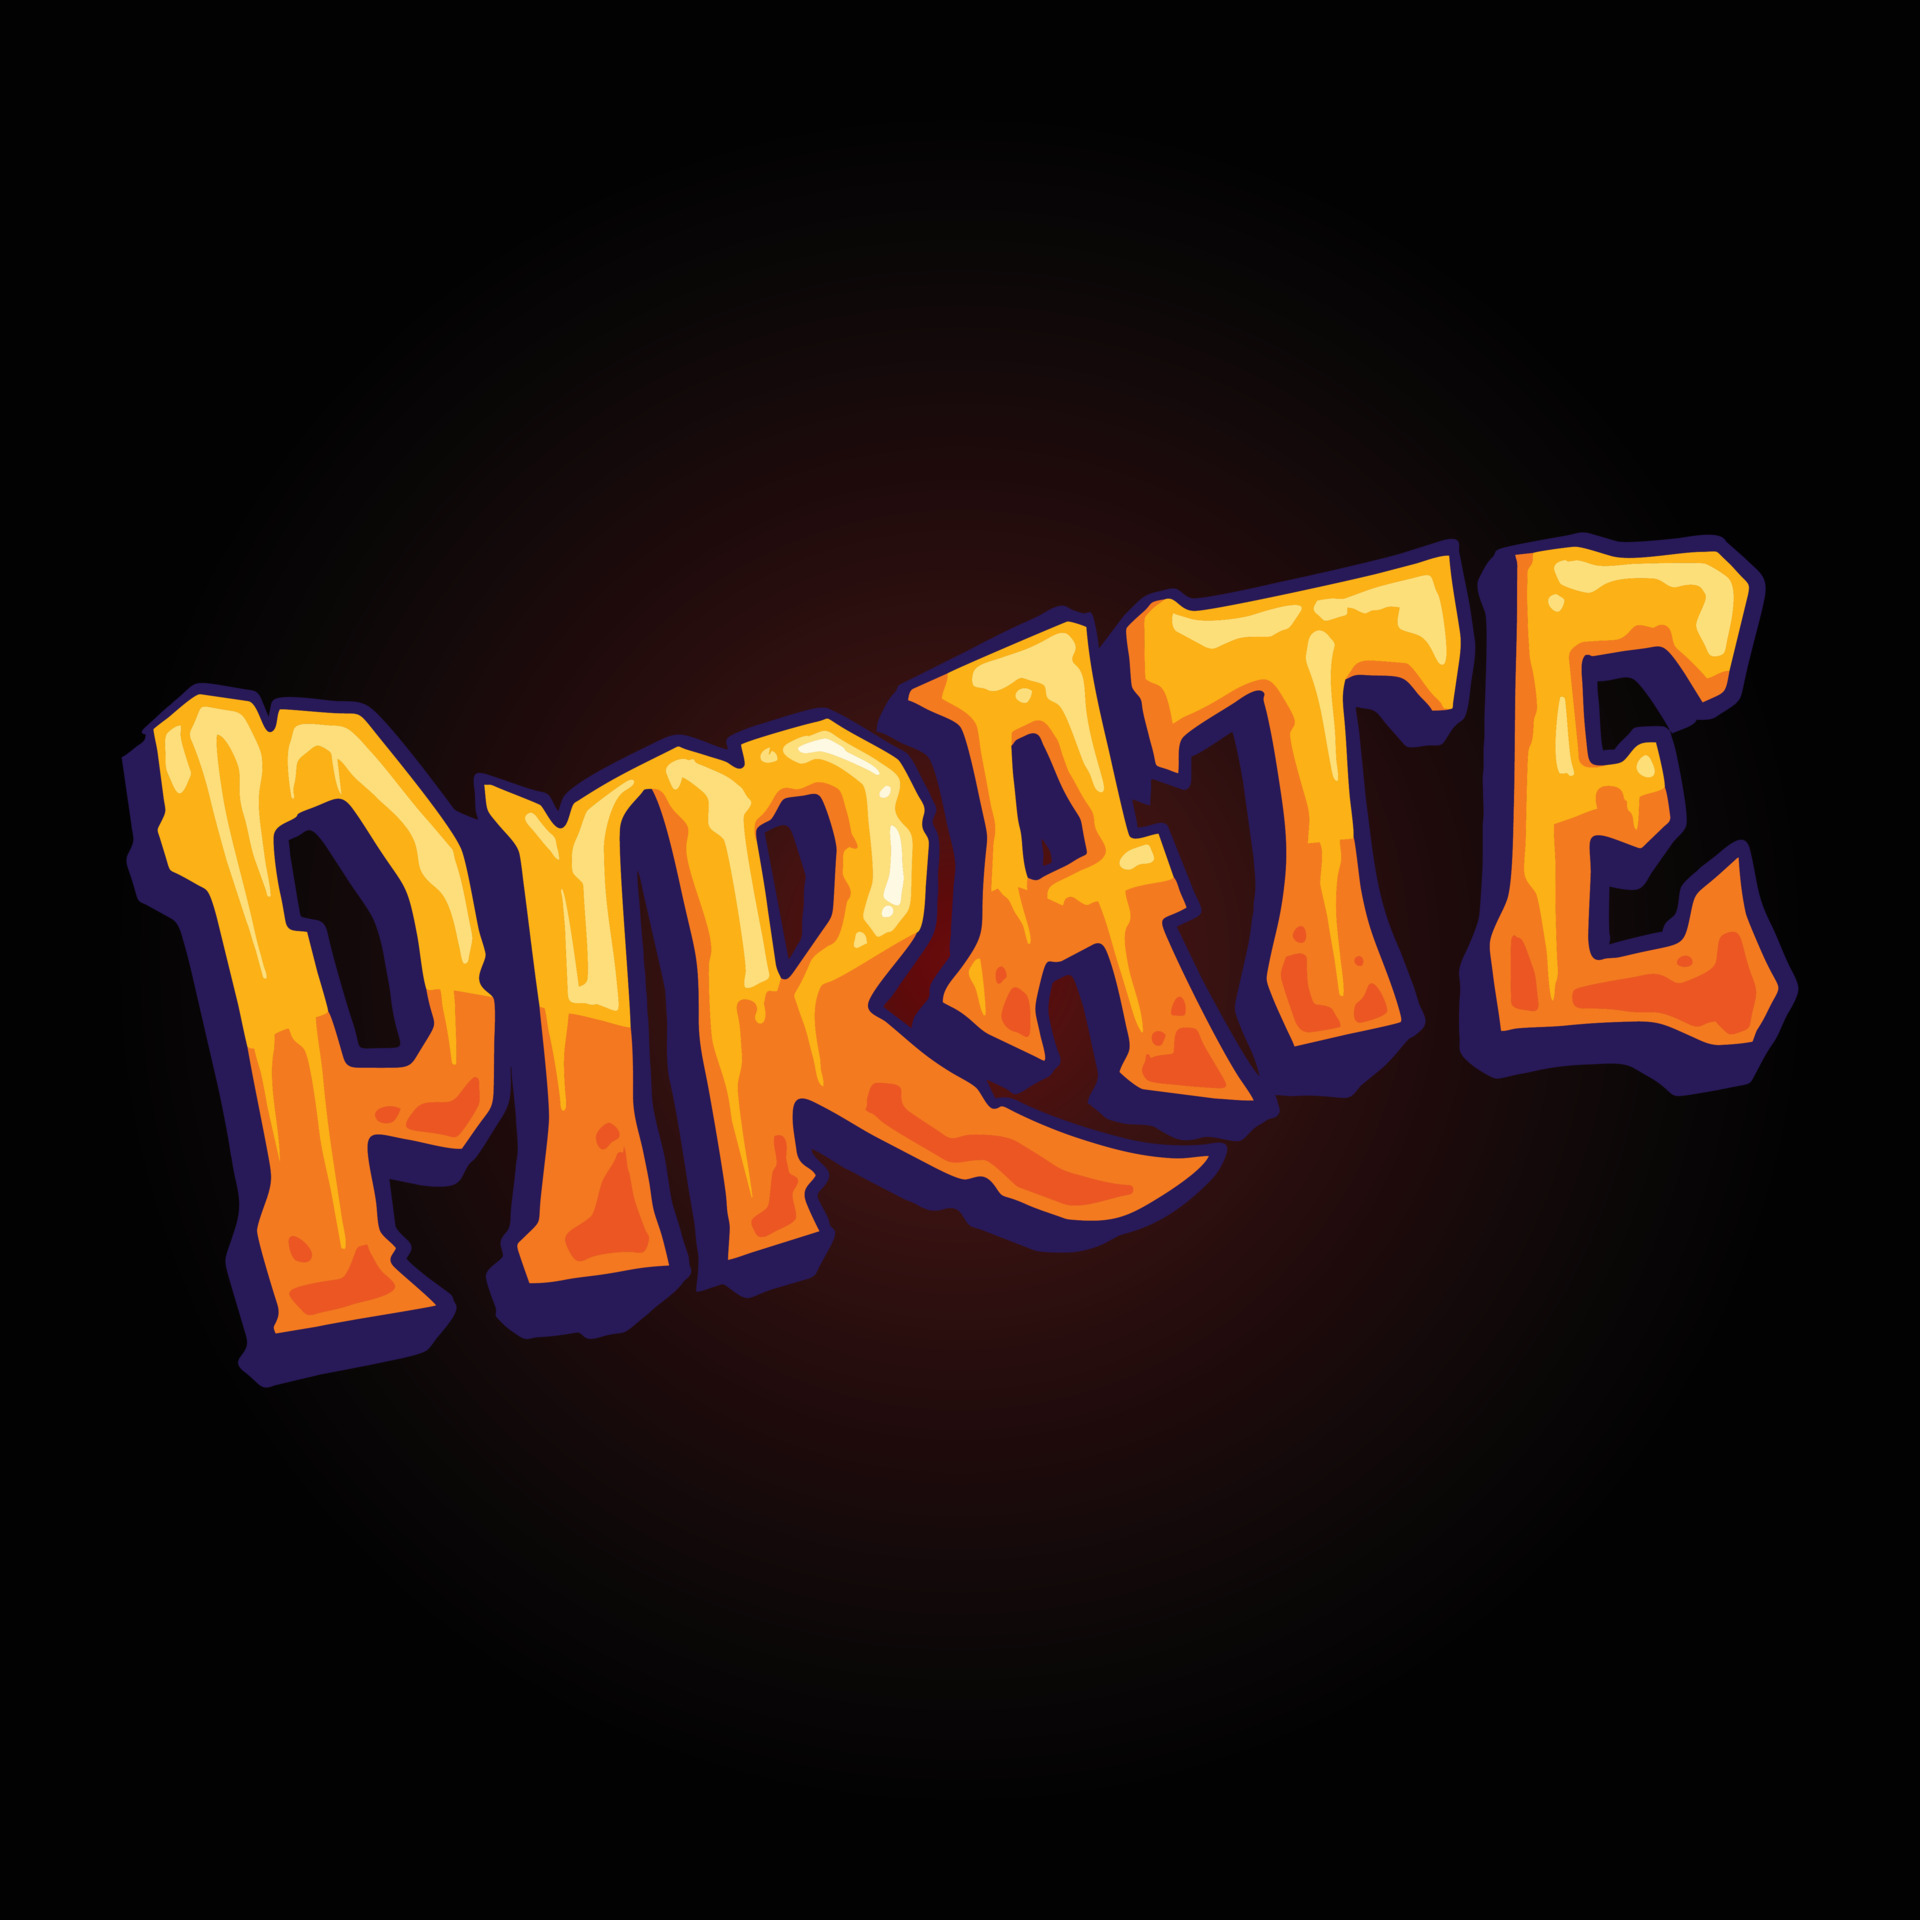 Modelo de logotipo de pirata desenhado à mão